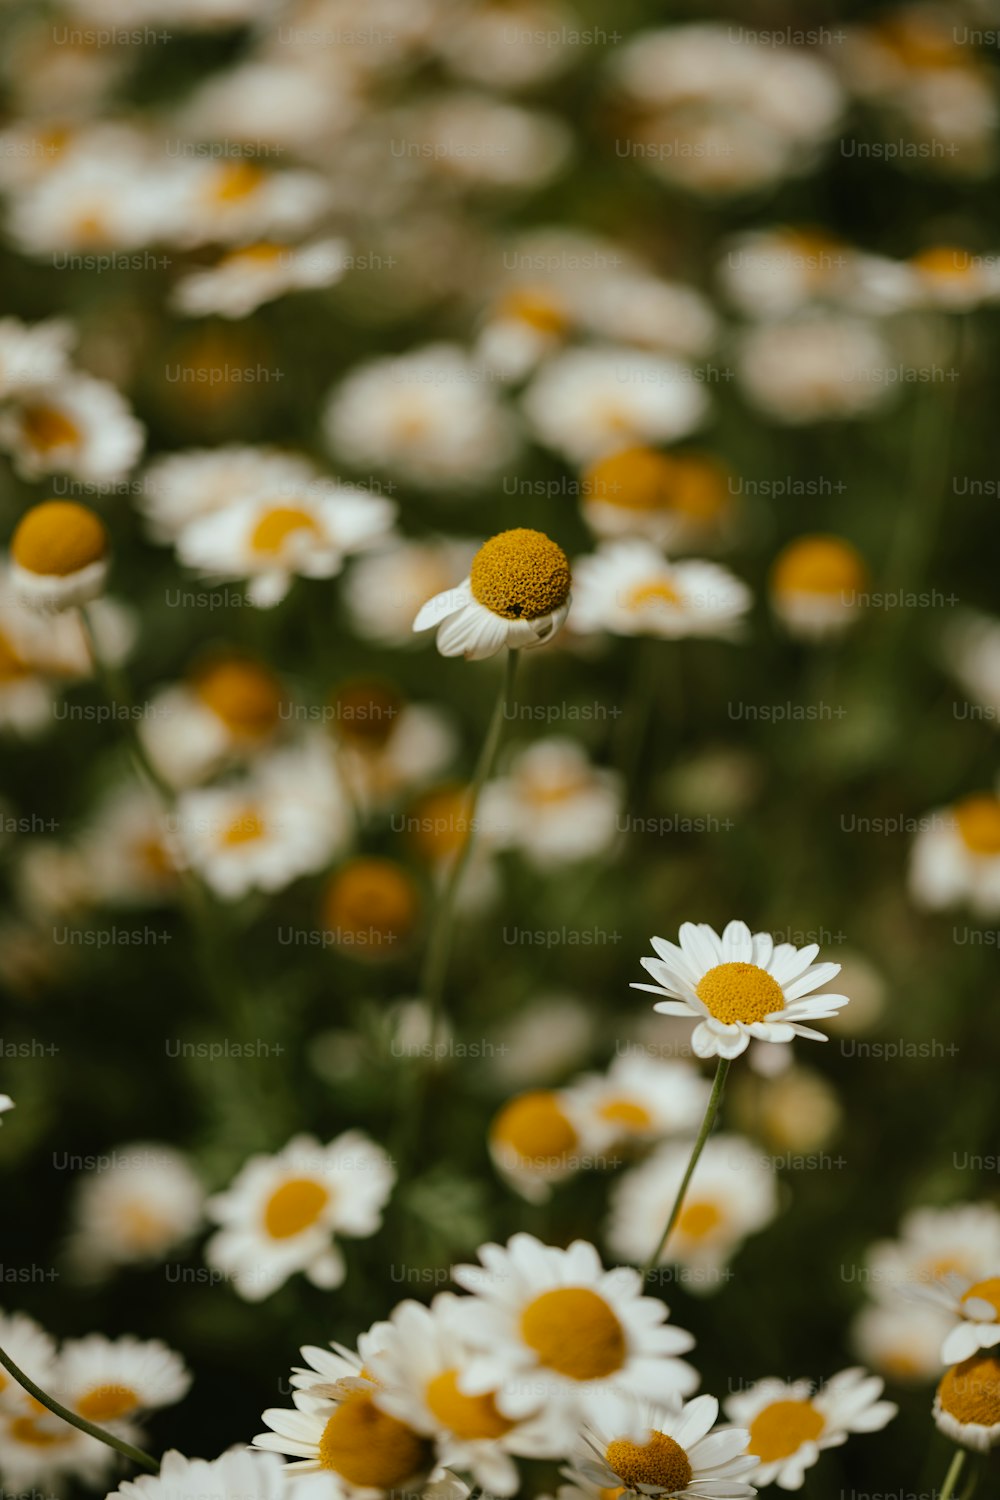 Un campo lleno de flores blancas y amarillas